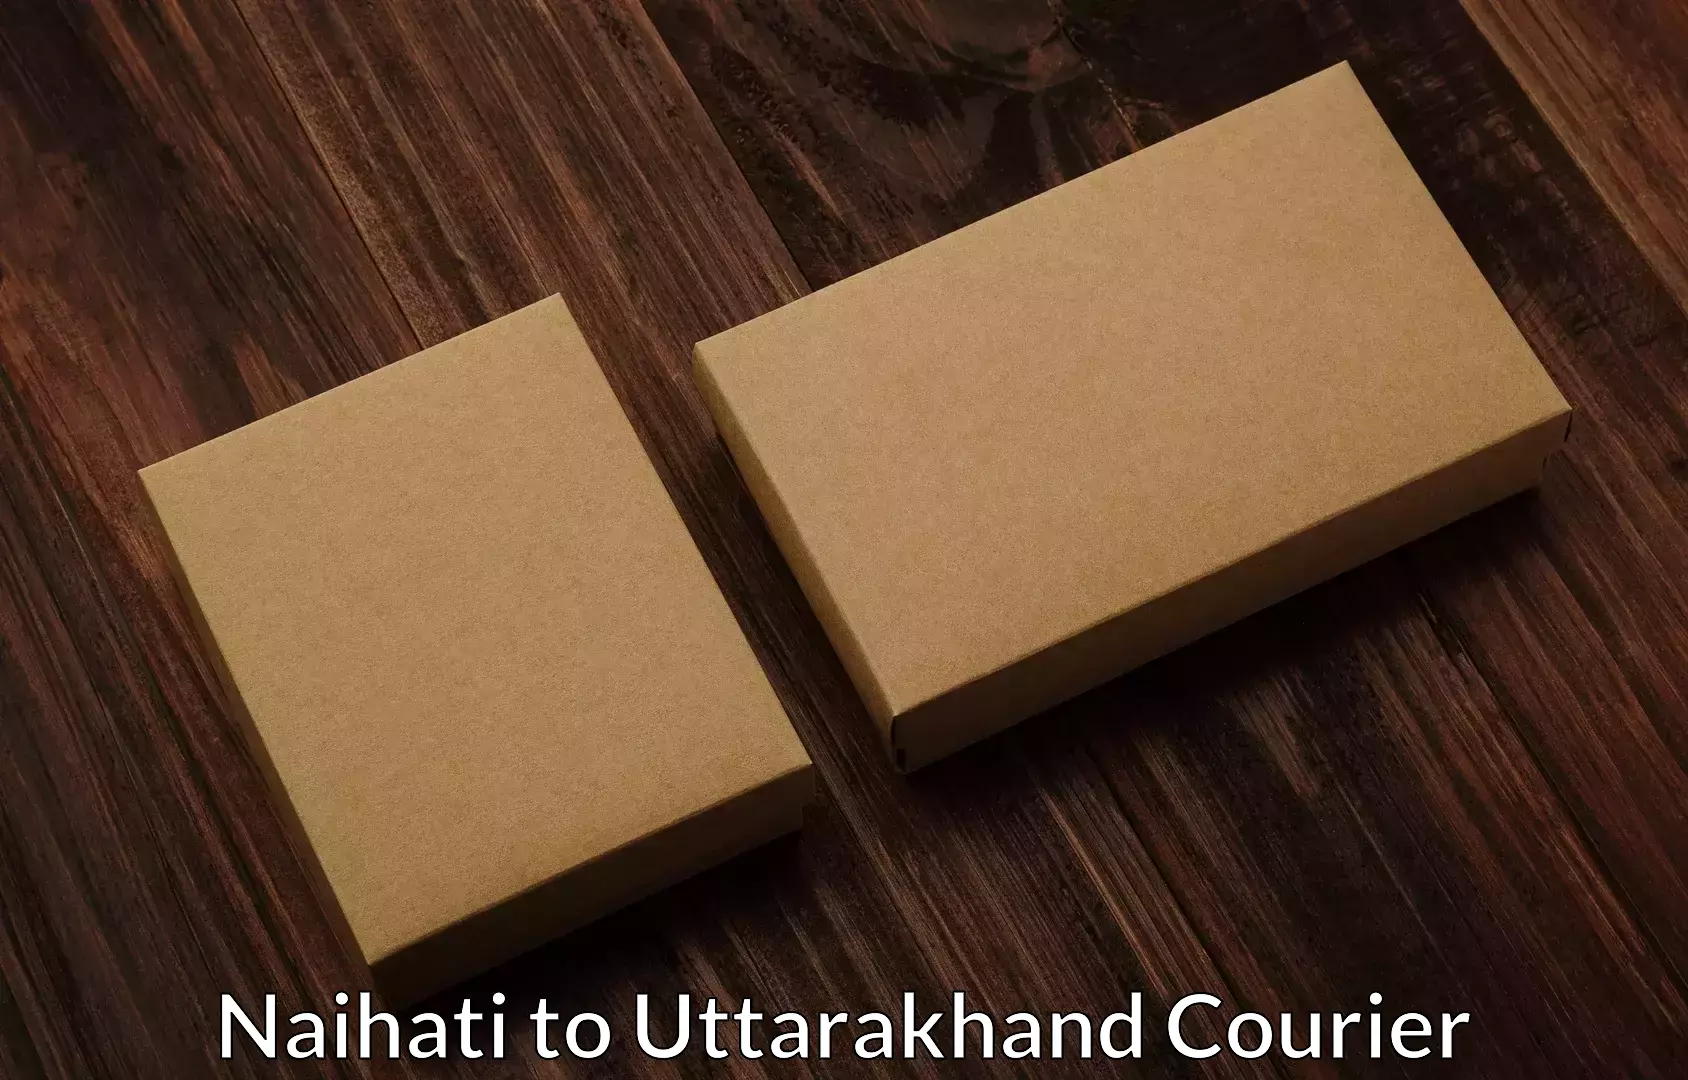 Expert goods movers Naihati to Rishikesh